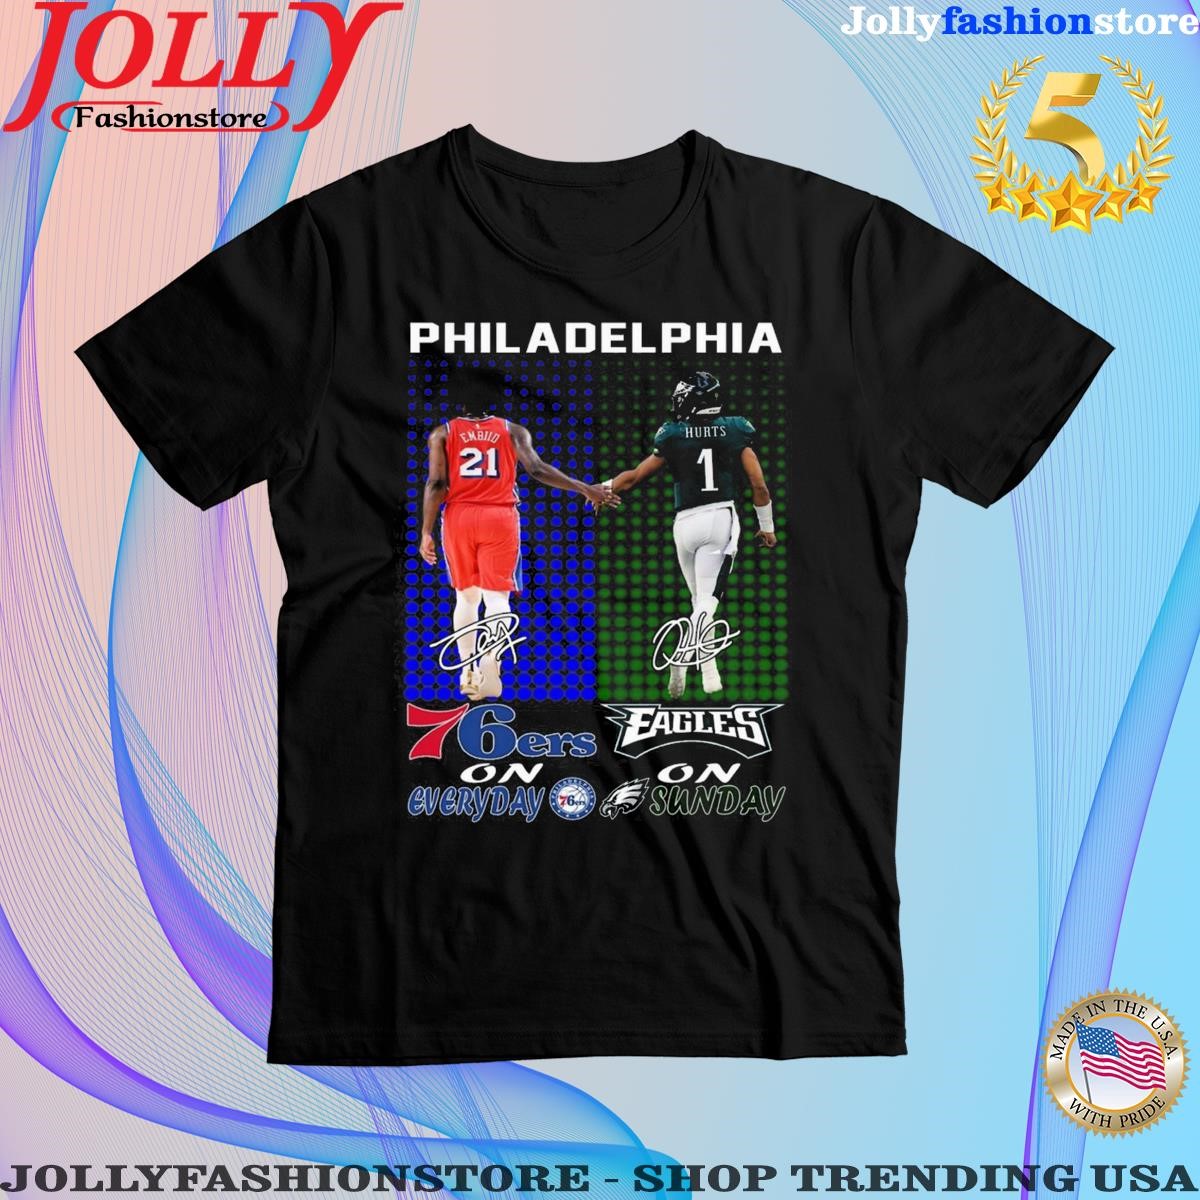 Philadelphia 76ers on everyday philadelphia on sunday signatures Shirt